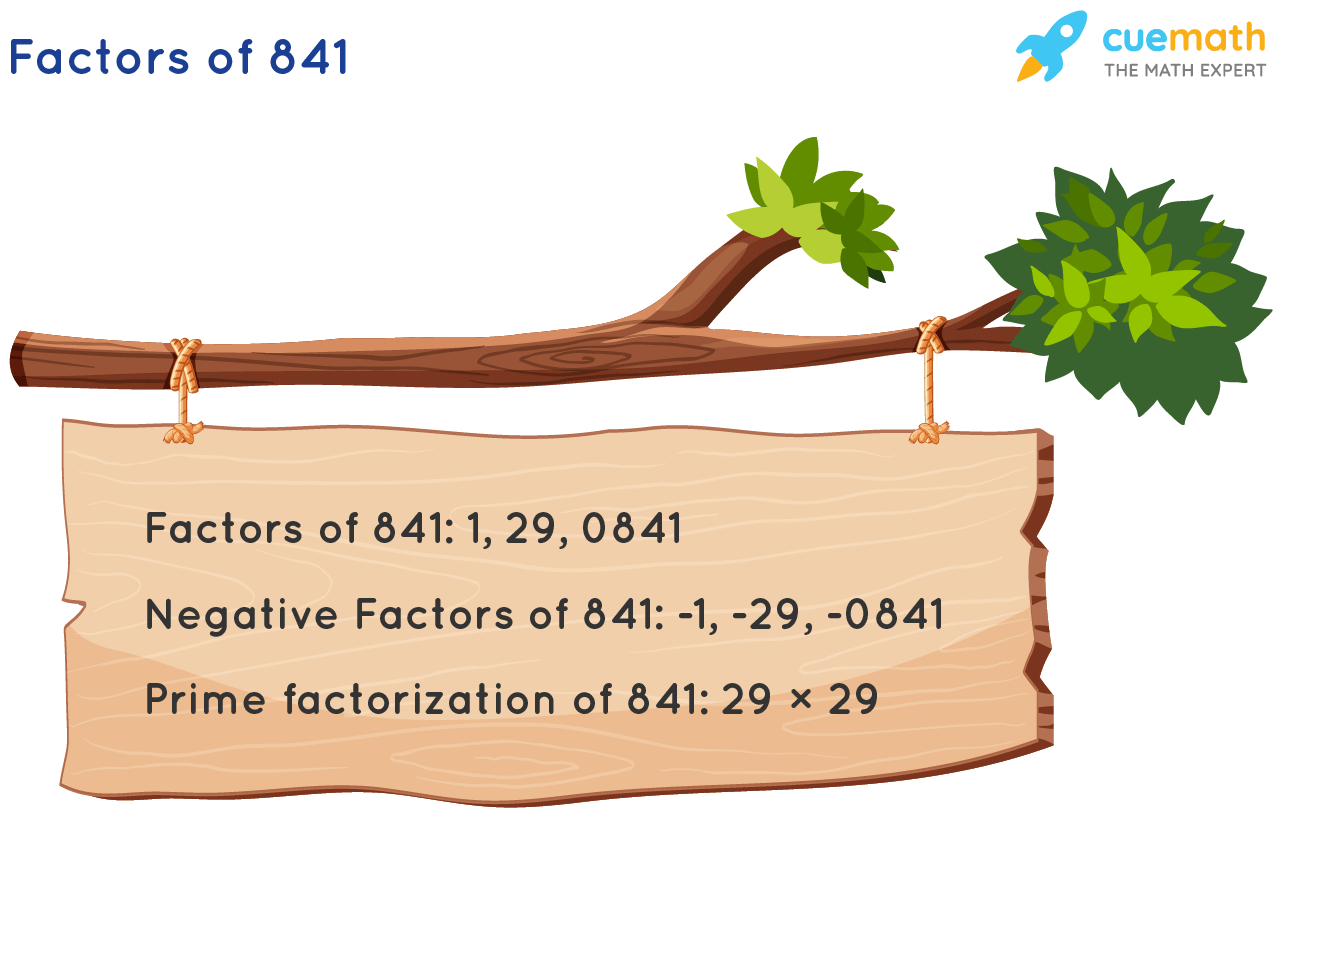 Factors of 841